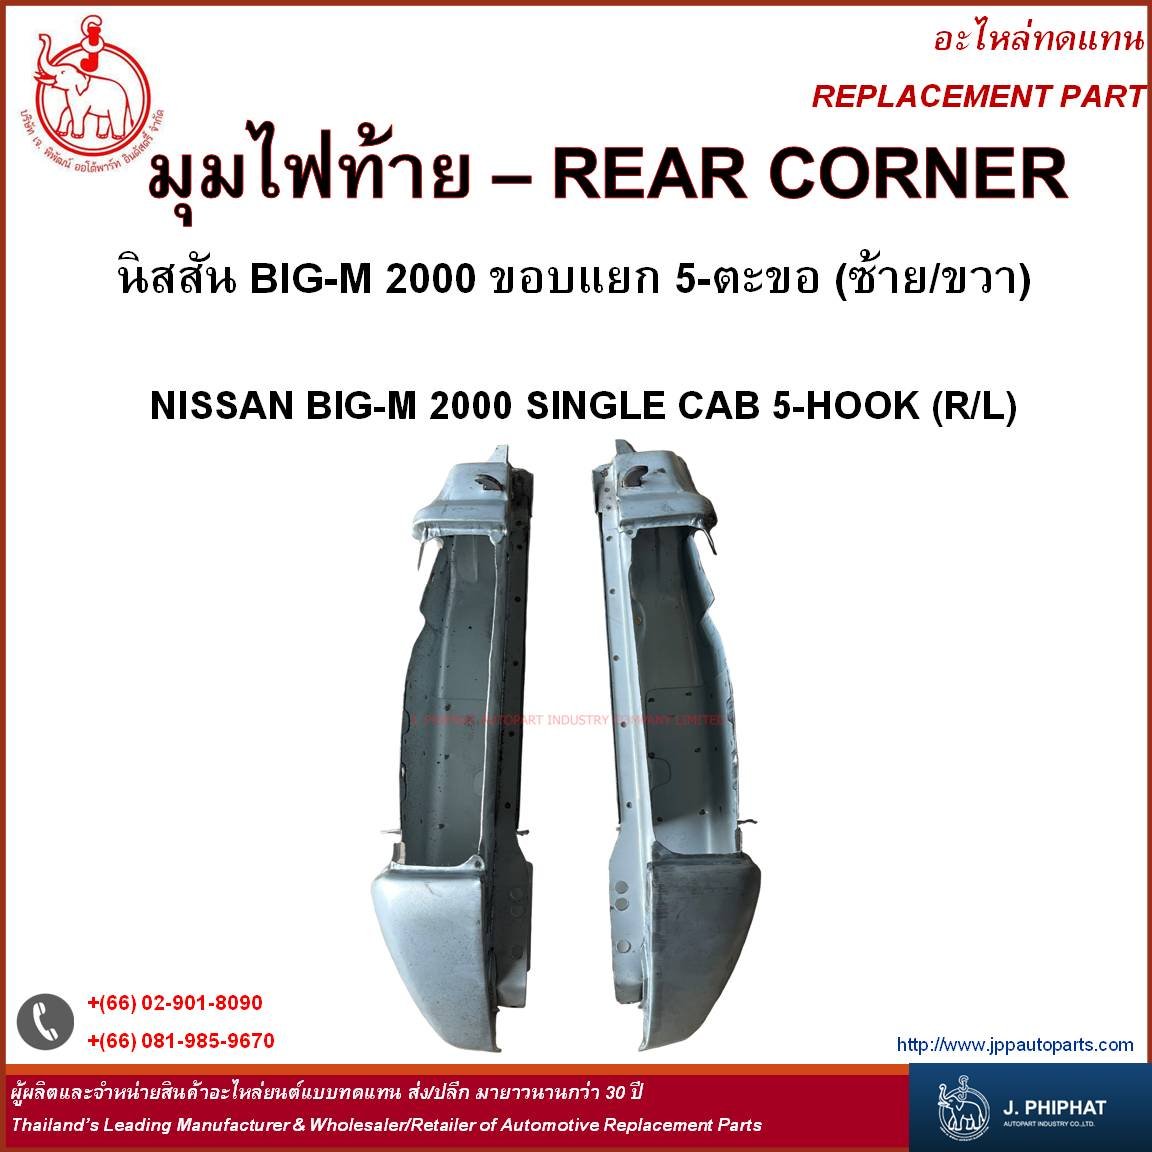 Rear Corner - NISSAN BIG-M 2000 SINGLE CAB 5-HOOK (R/L)